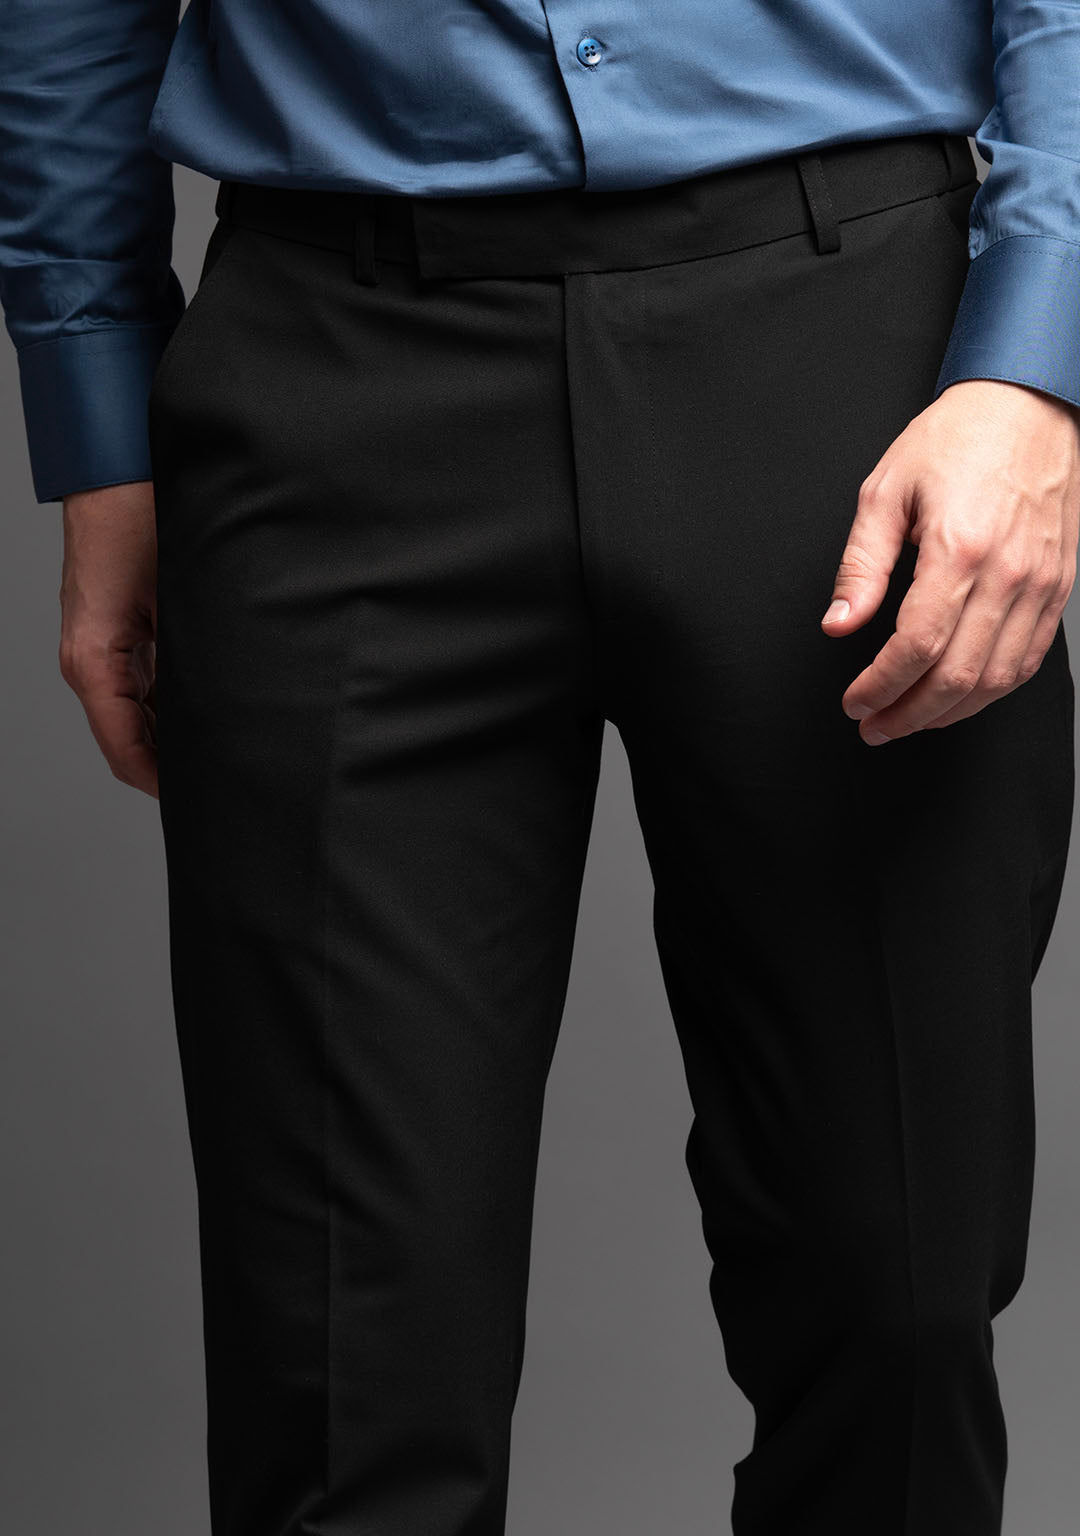 formal pants for men